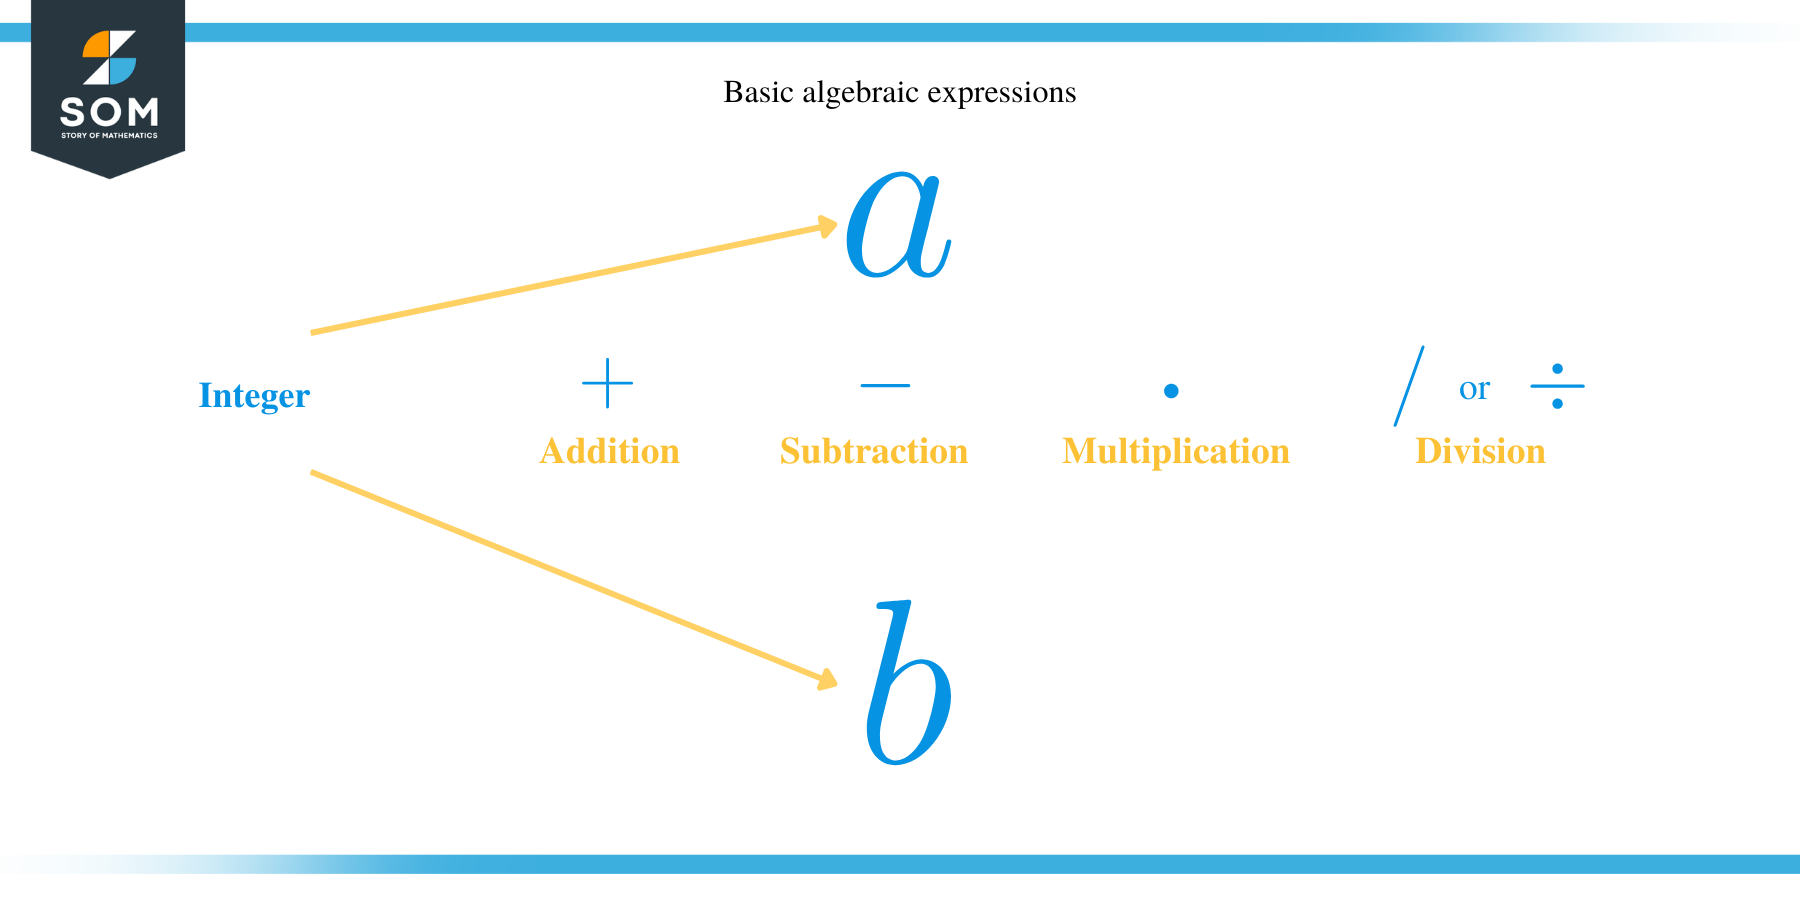 Basic algebraic expression